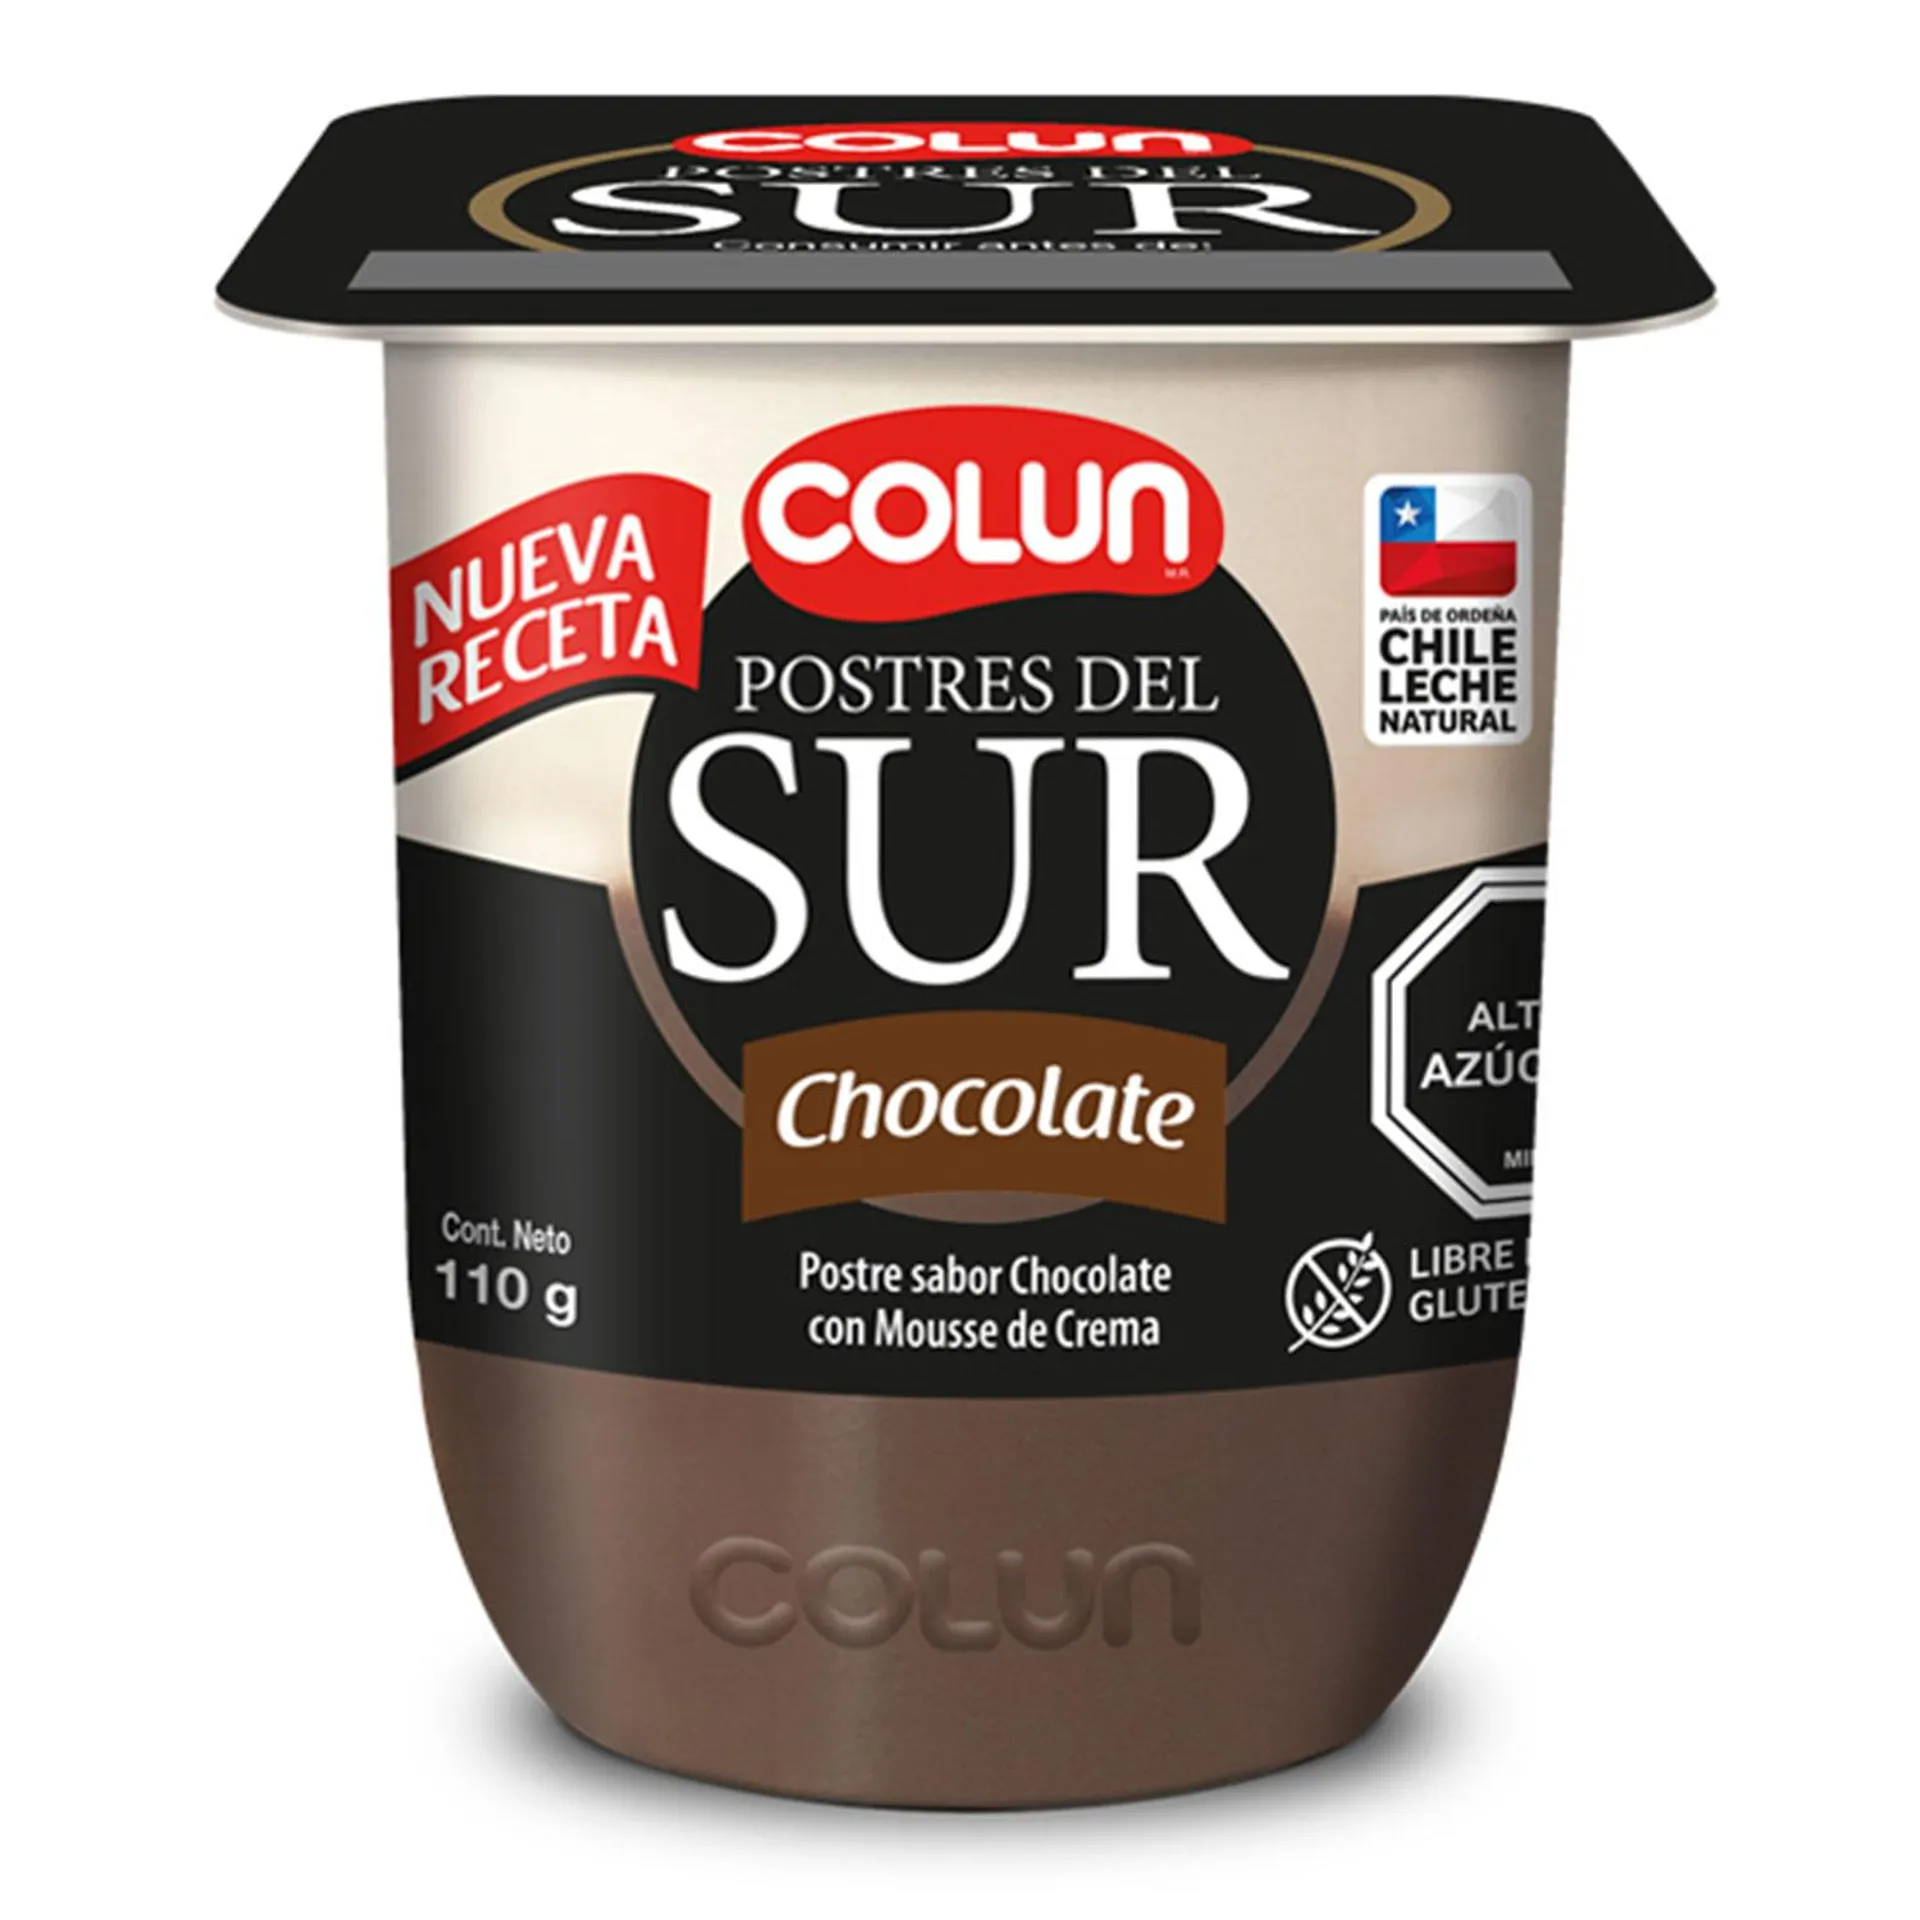 Postre del Sur Colun Chocolate 110 g